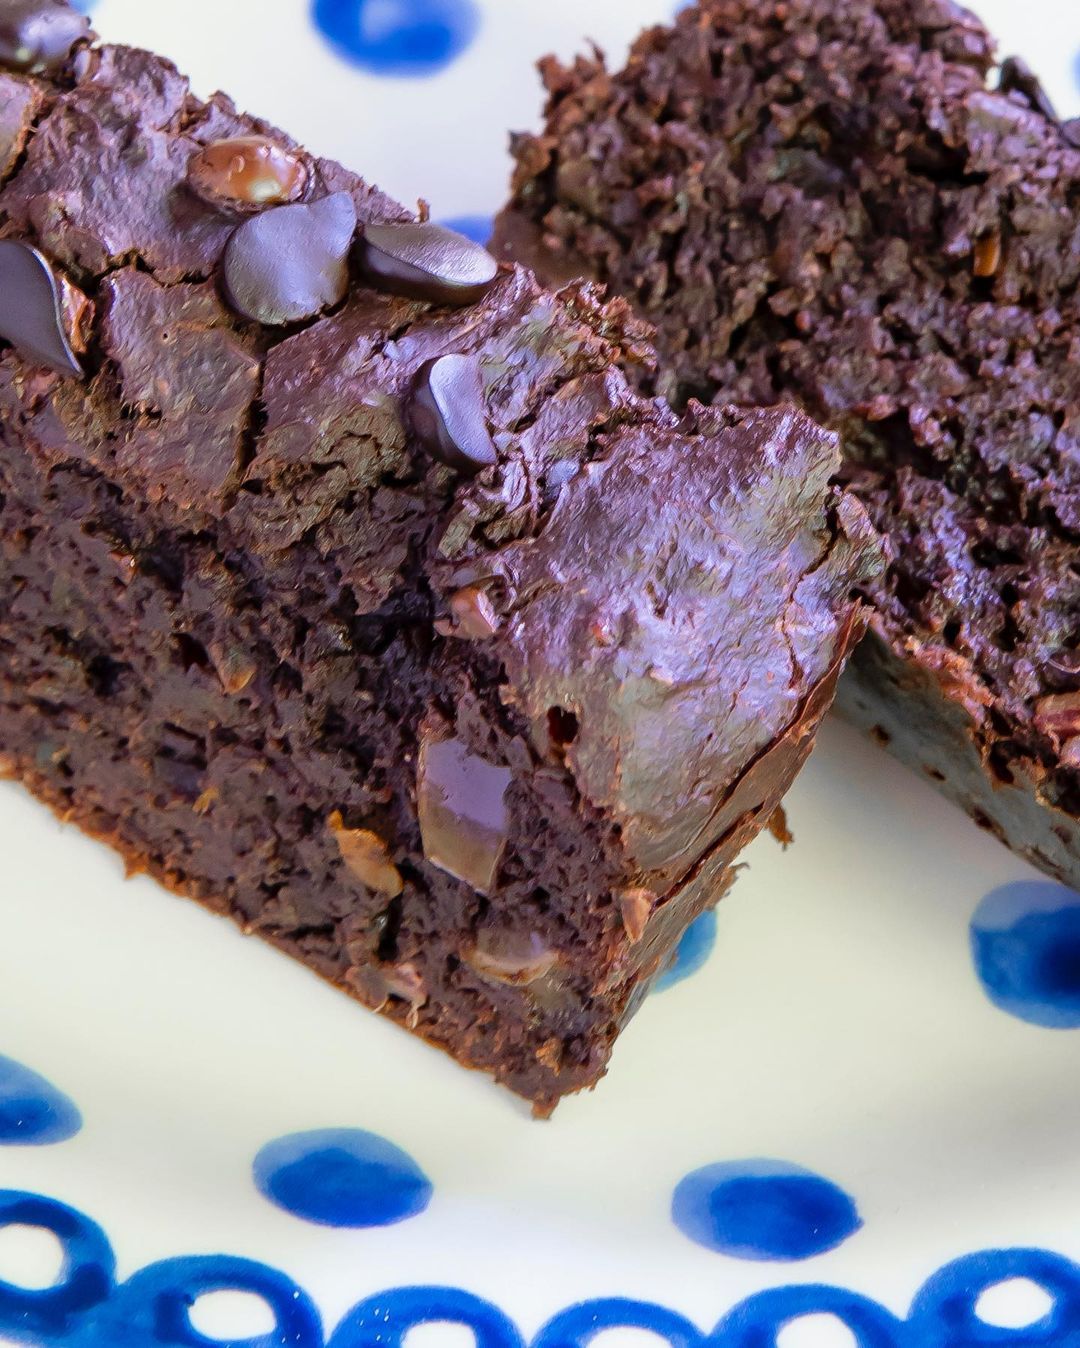 Healthy Zucchini Vegan Chocolate Cake